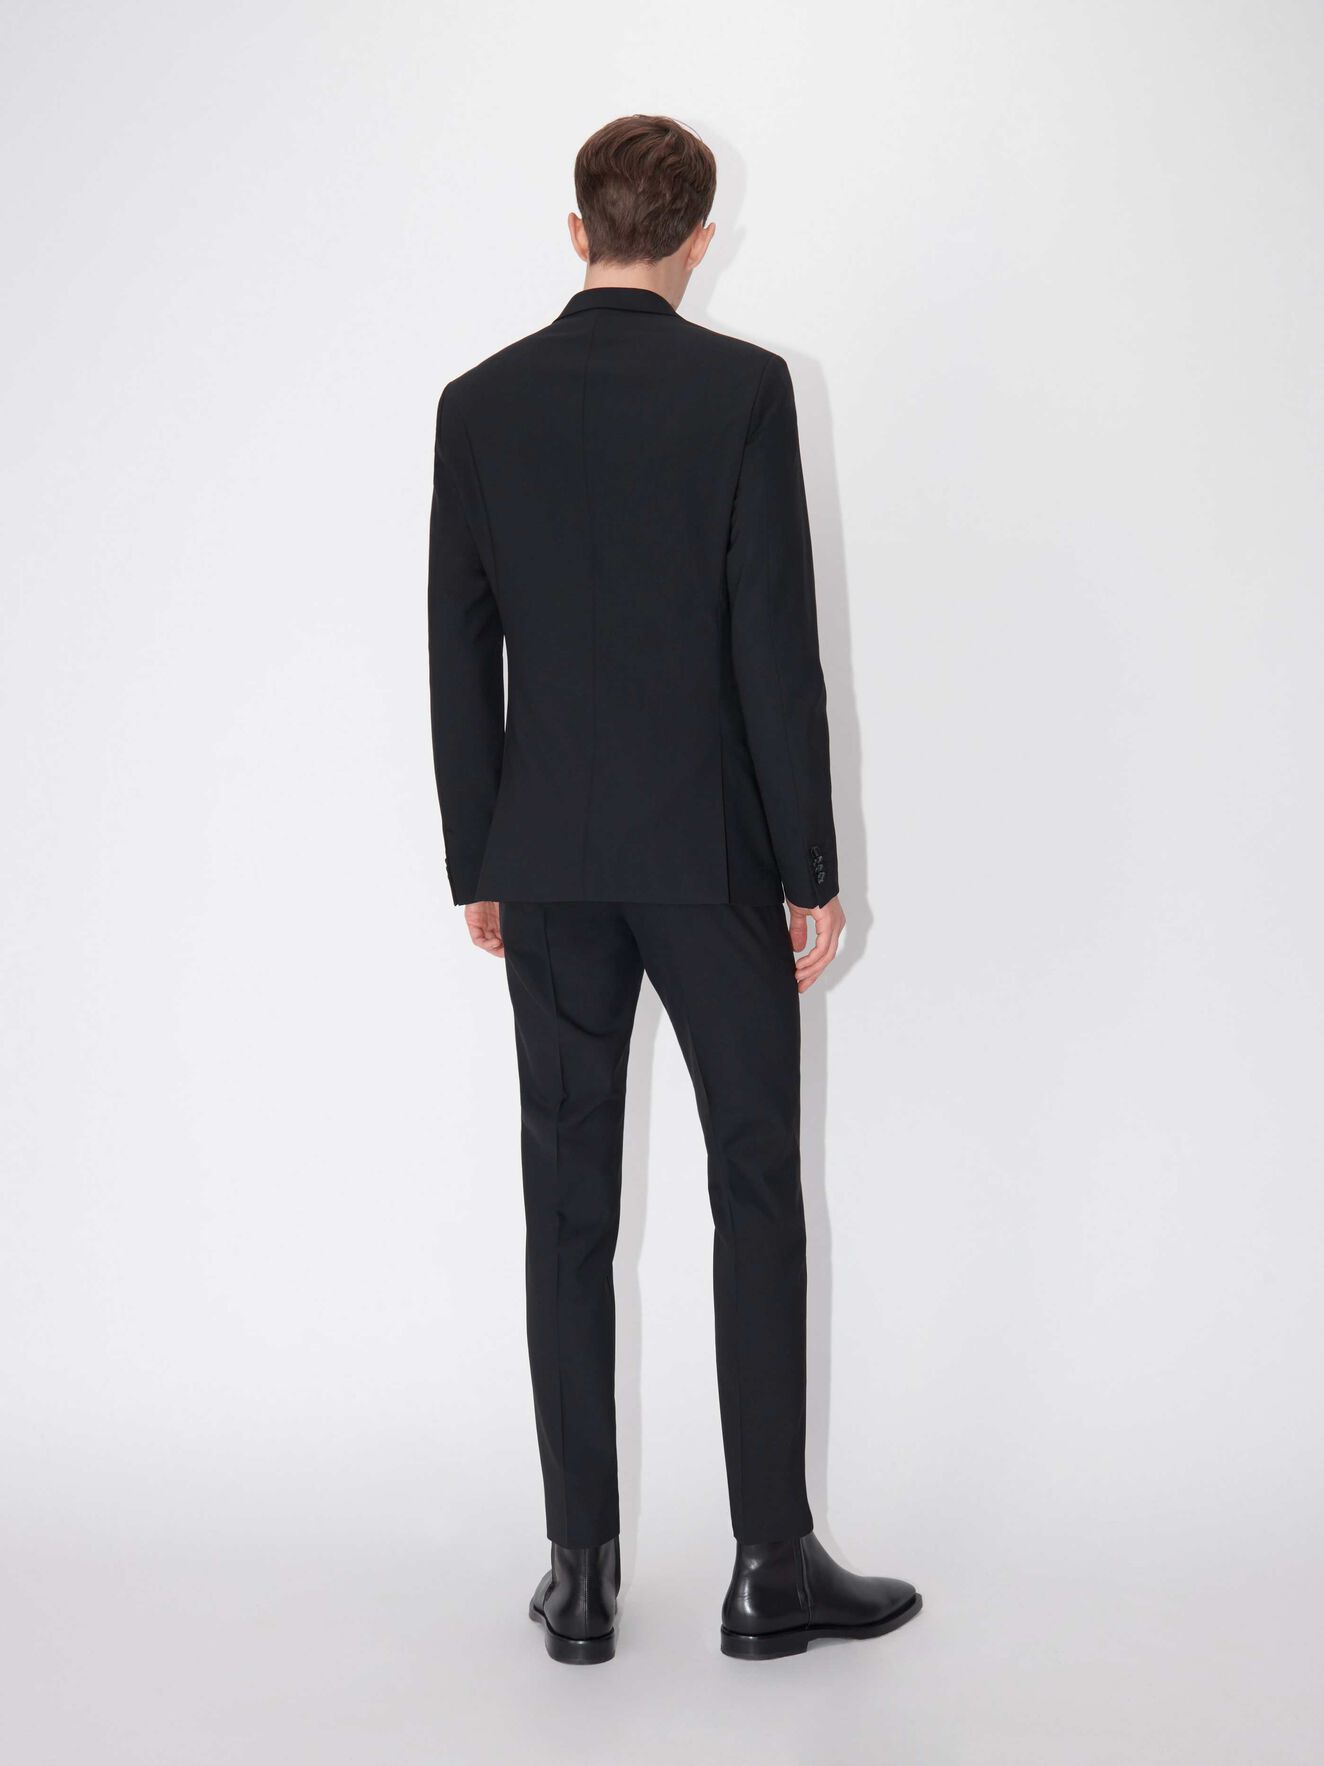 Jil Suit - Buy Suits online